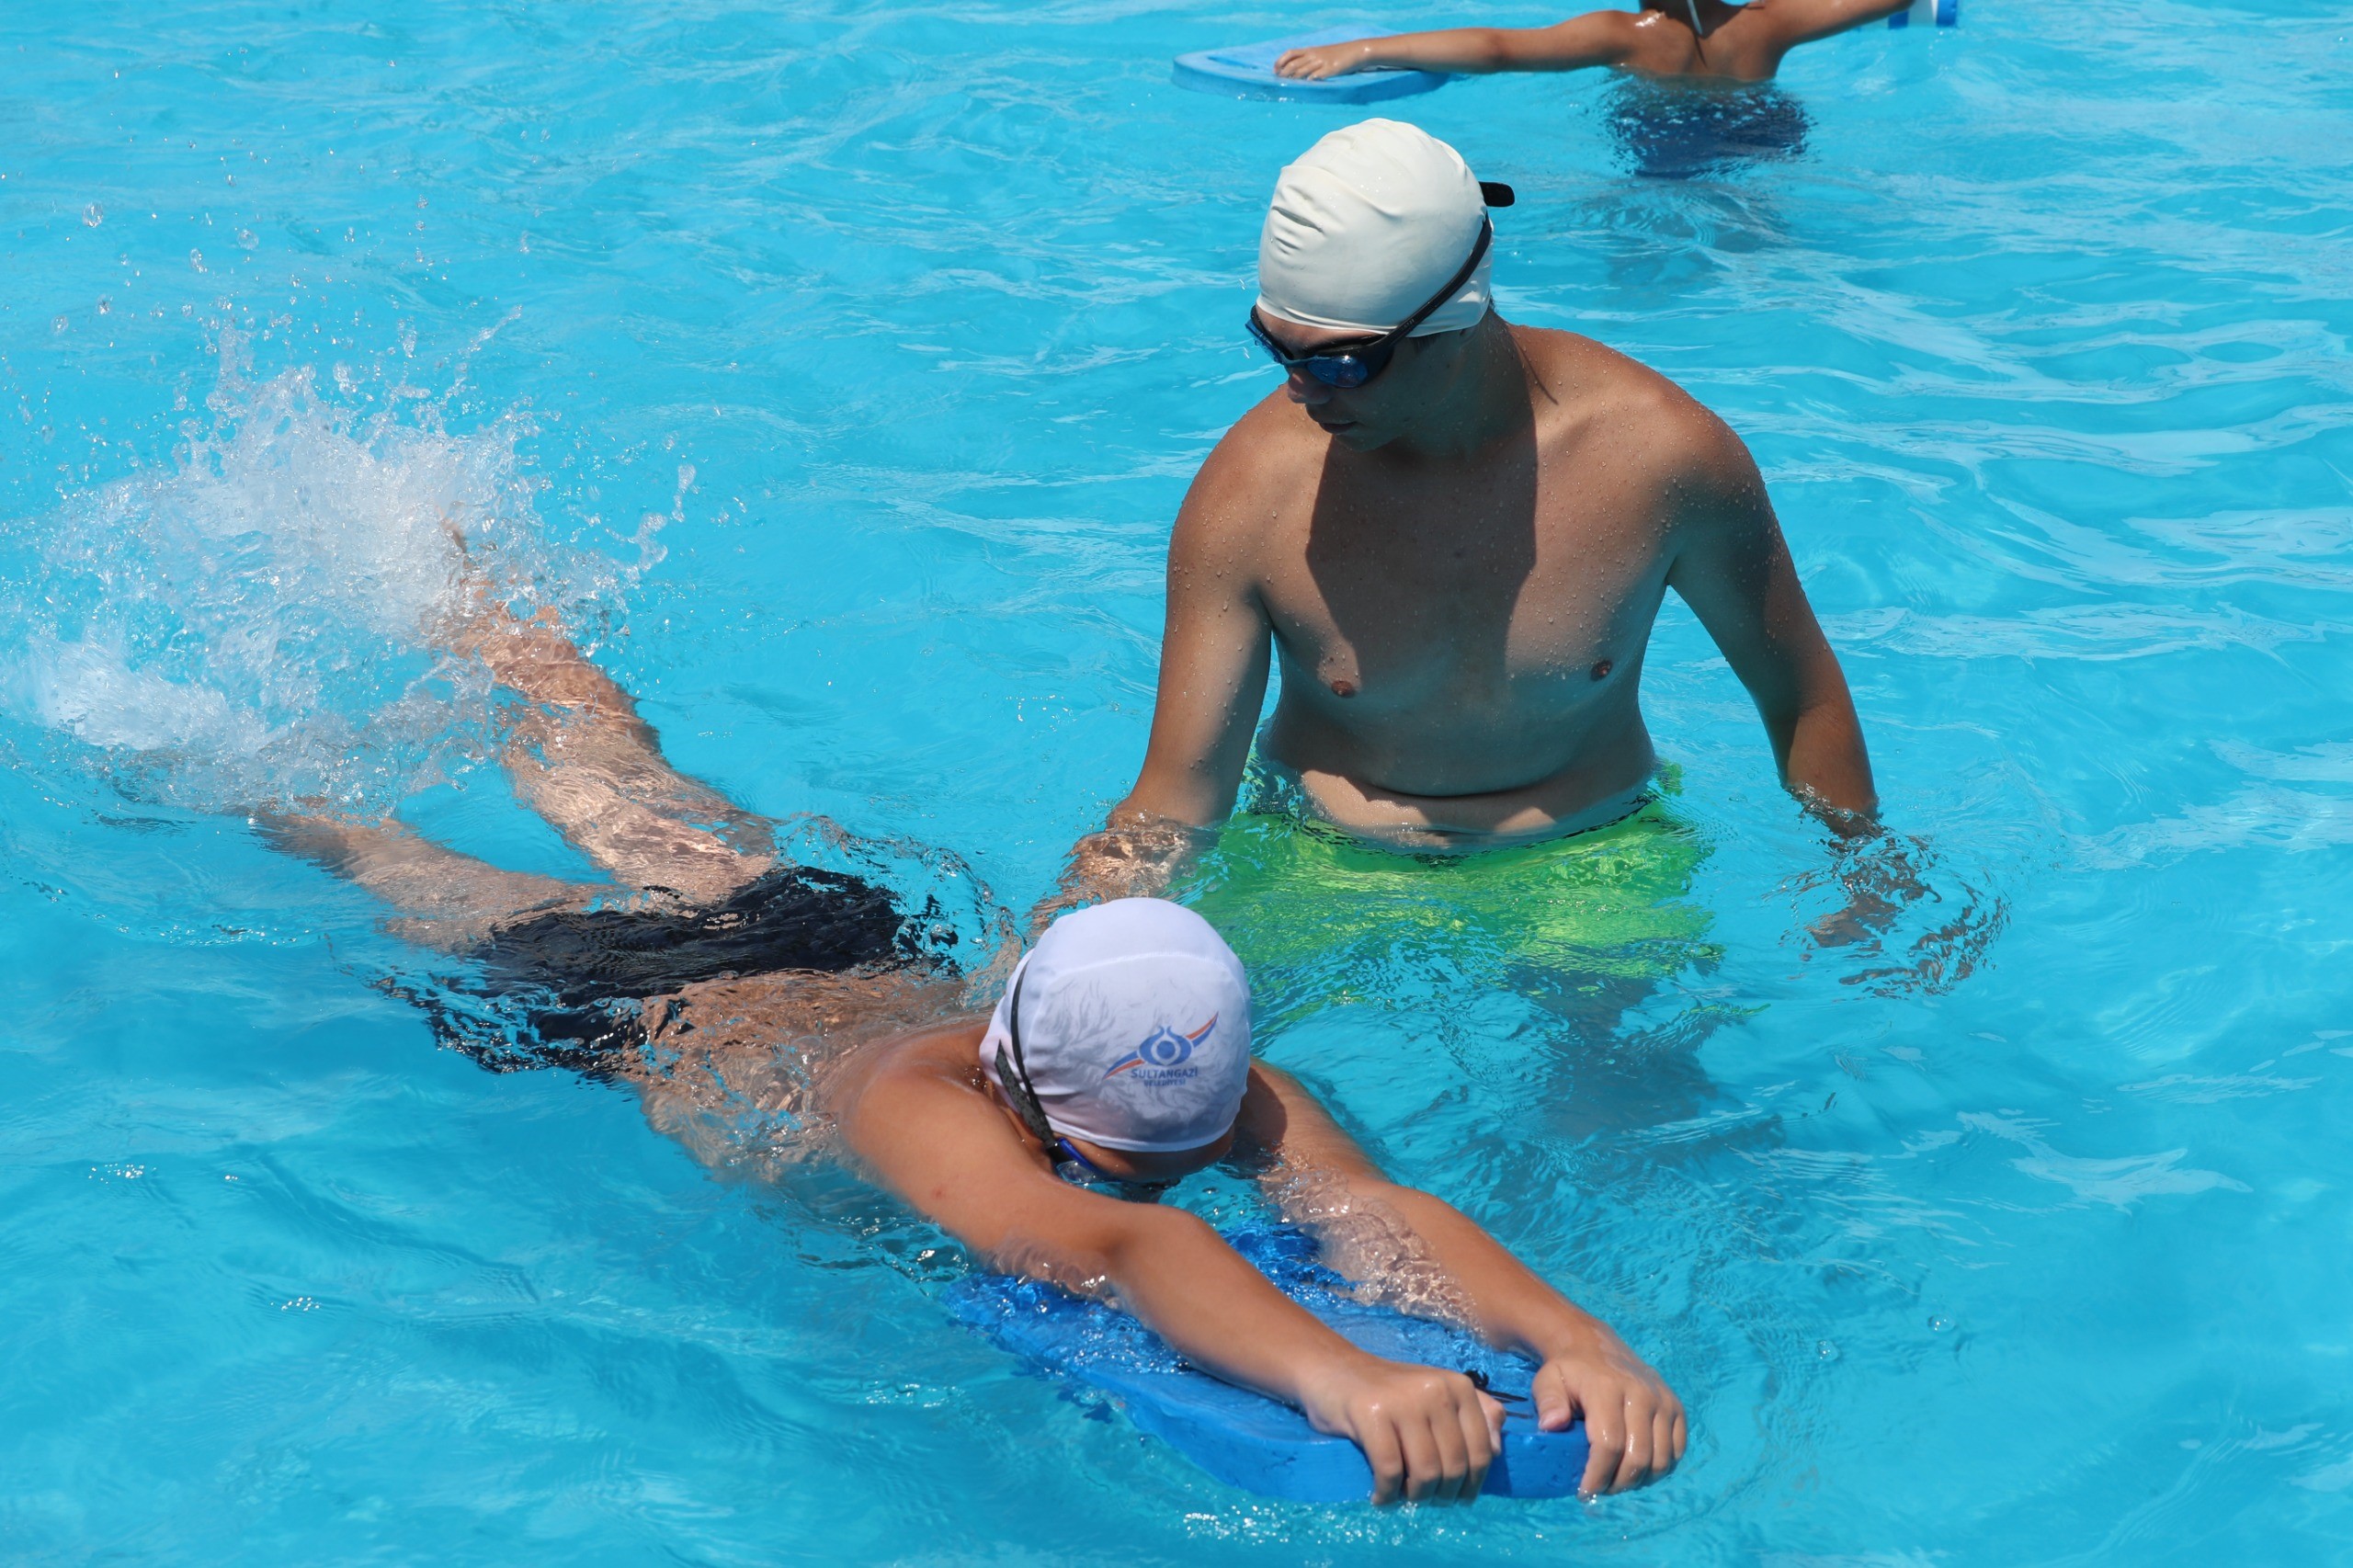 Sultangazi Belediyesi’nden Gençlere Yüzme Eğitimi: 900 Öğrenci Haftada İki Gün Ders Alıyor